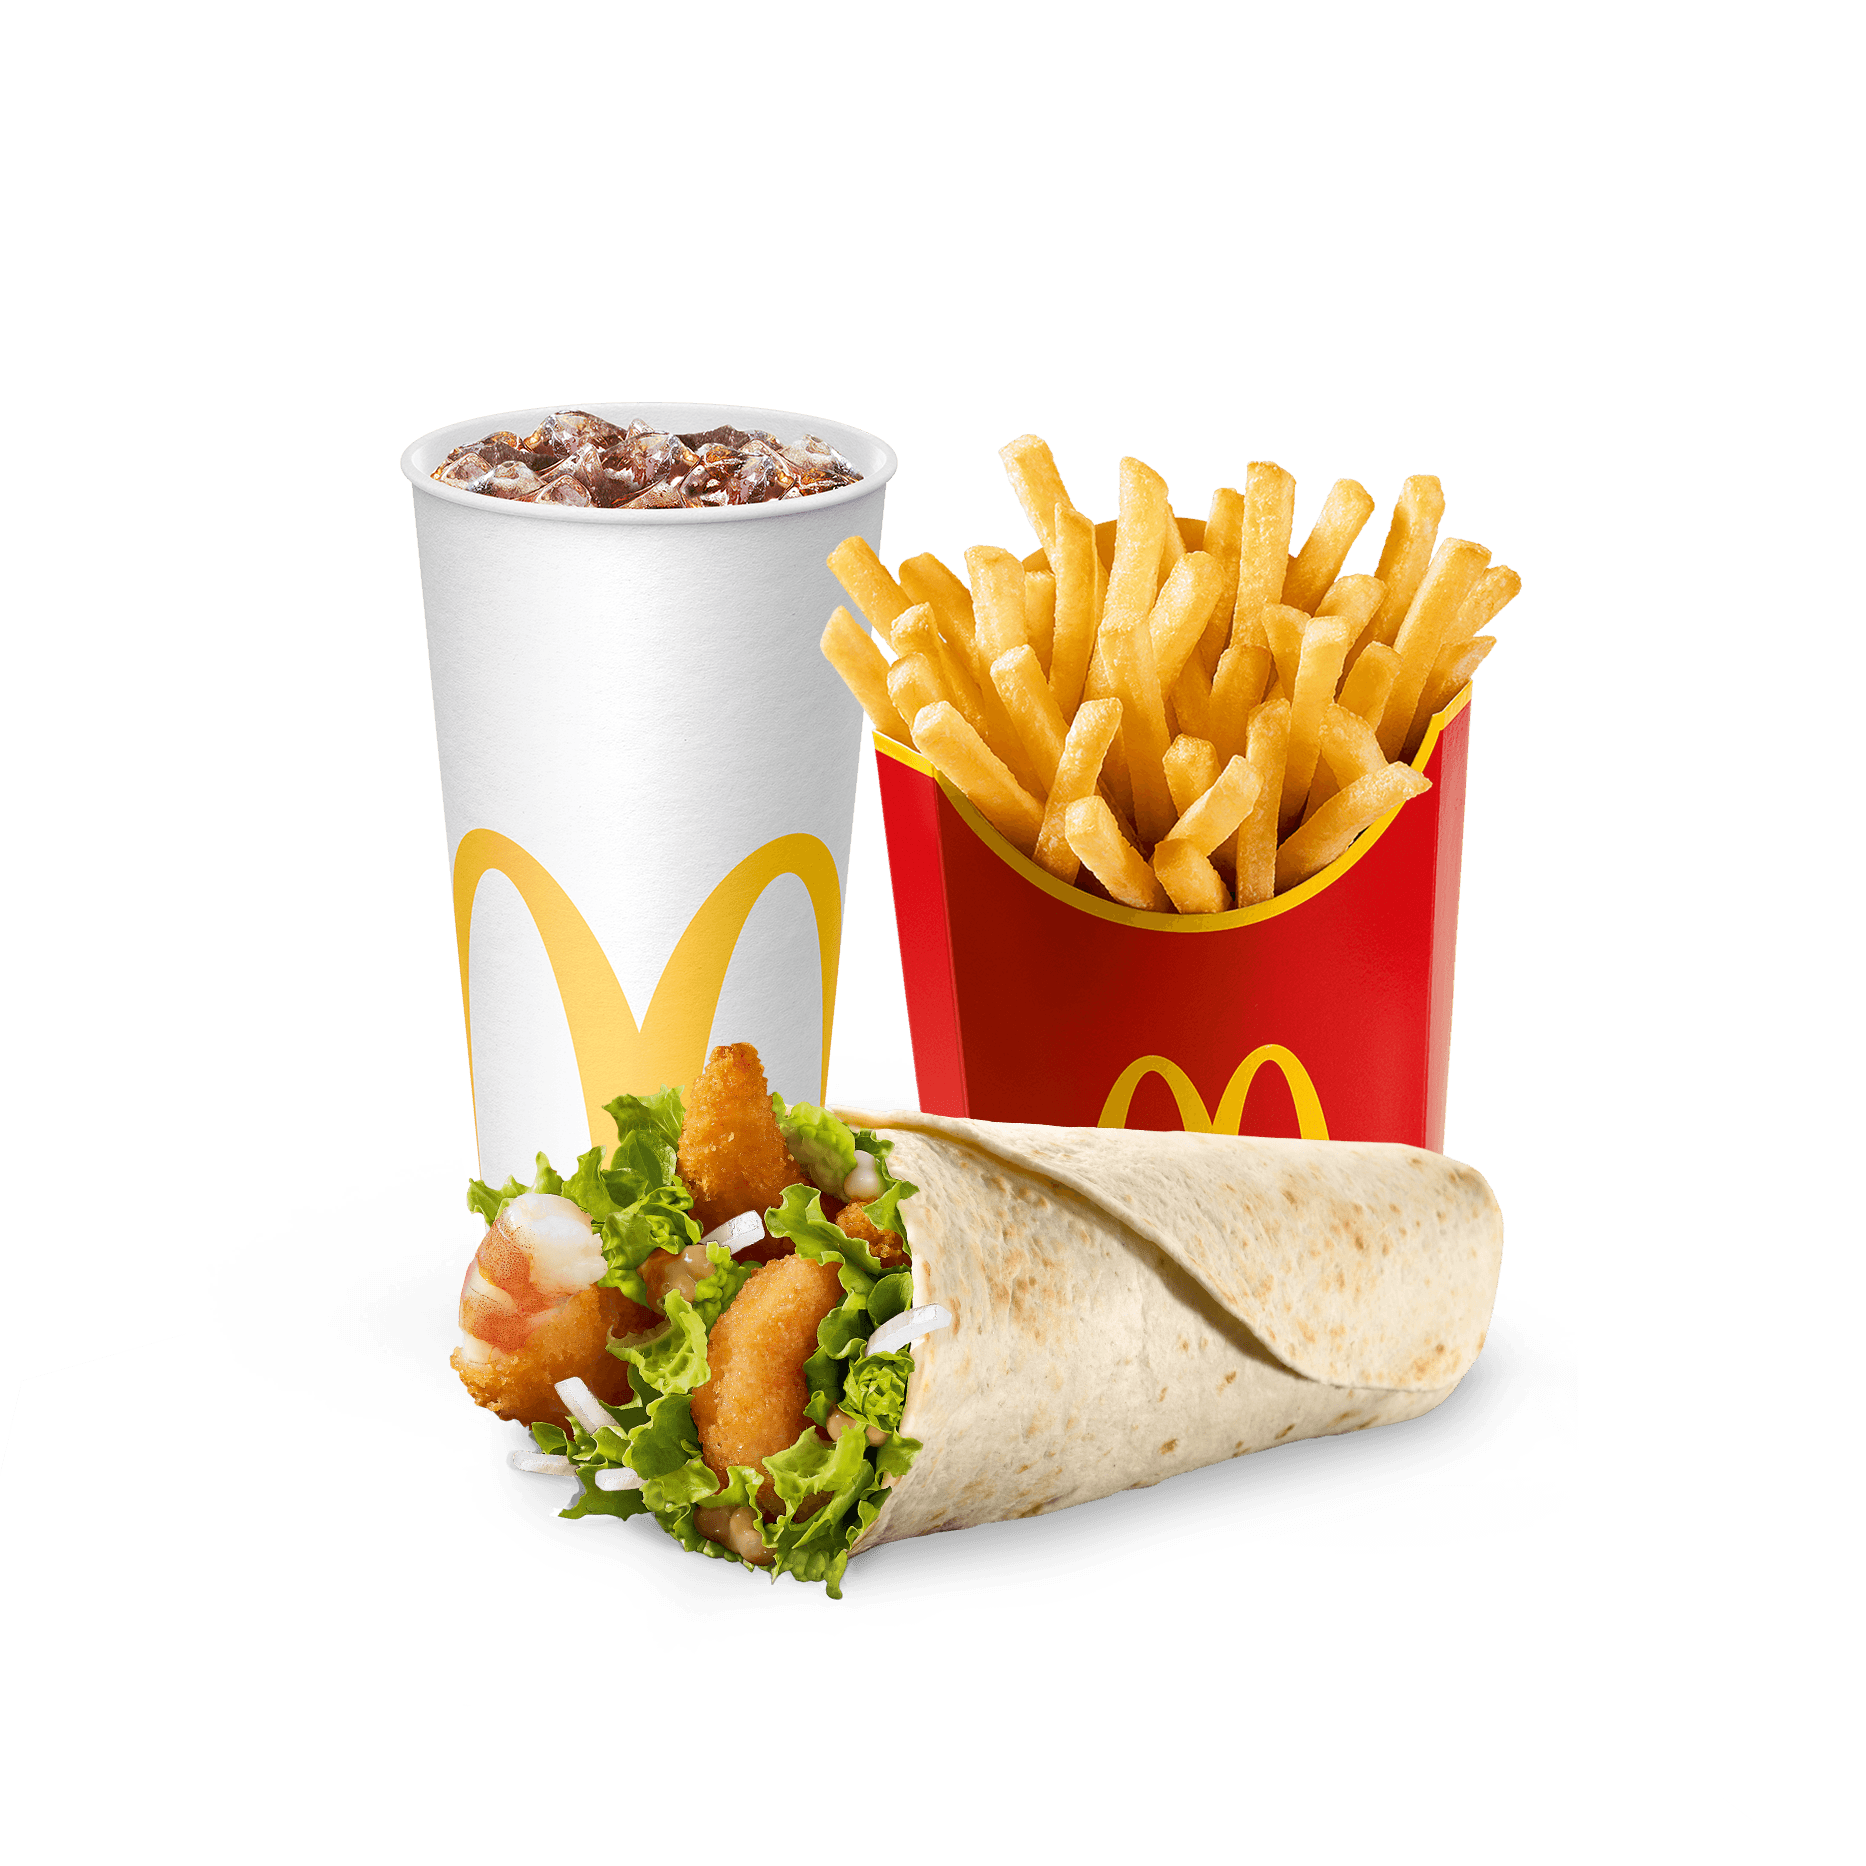 КАК Сделать Цезарь Ролл из McDonalds | Кулинария, Идеи для блюд, Национальная еда